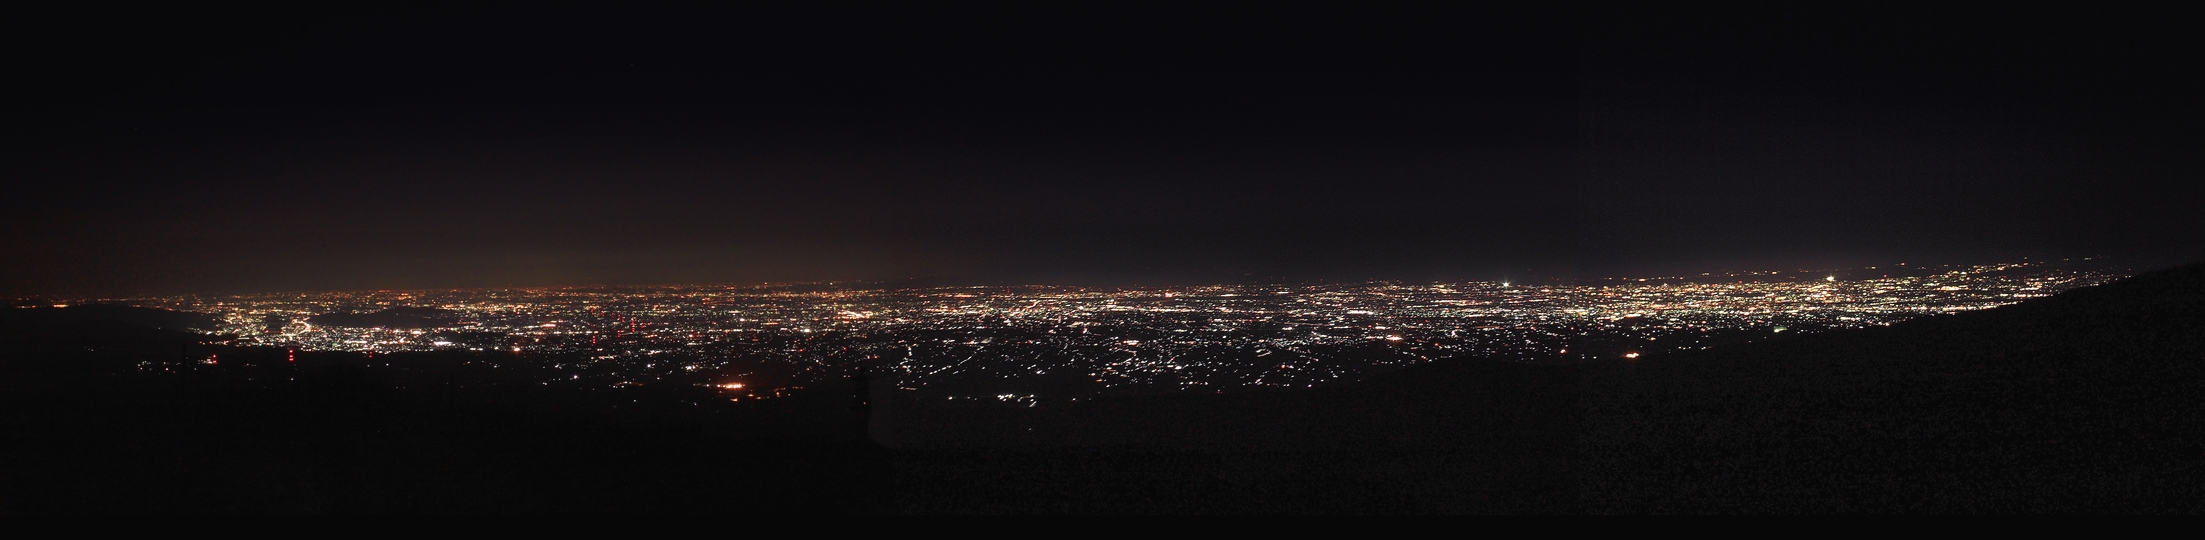 赤城山 夜景パノラマ展望台